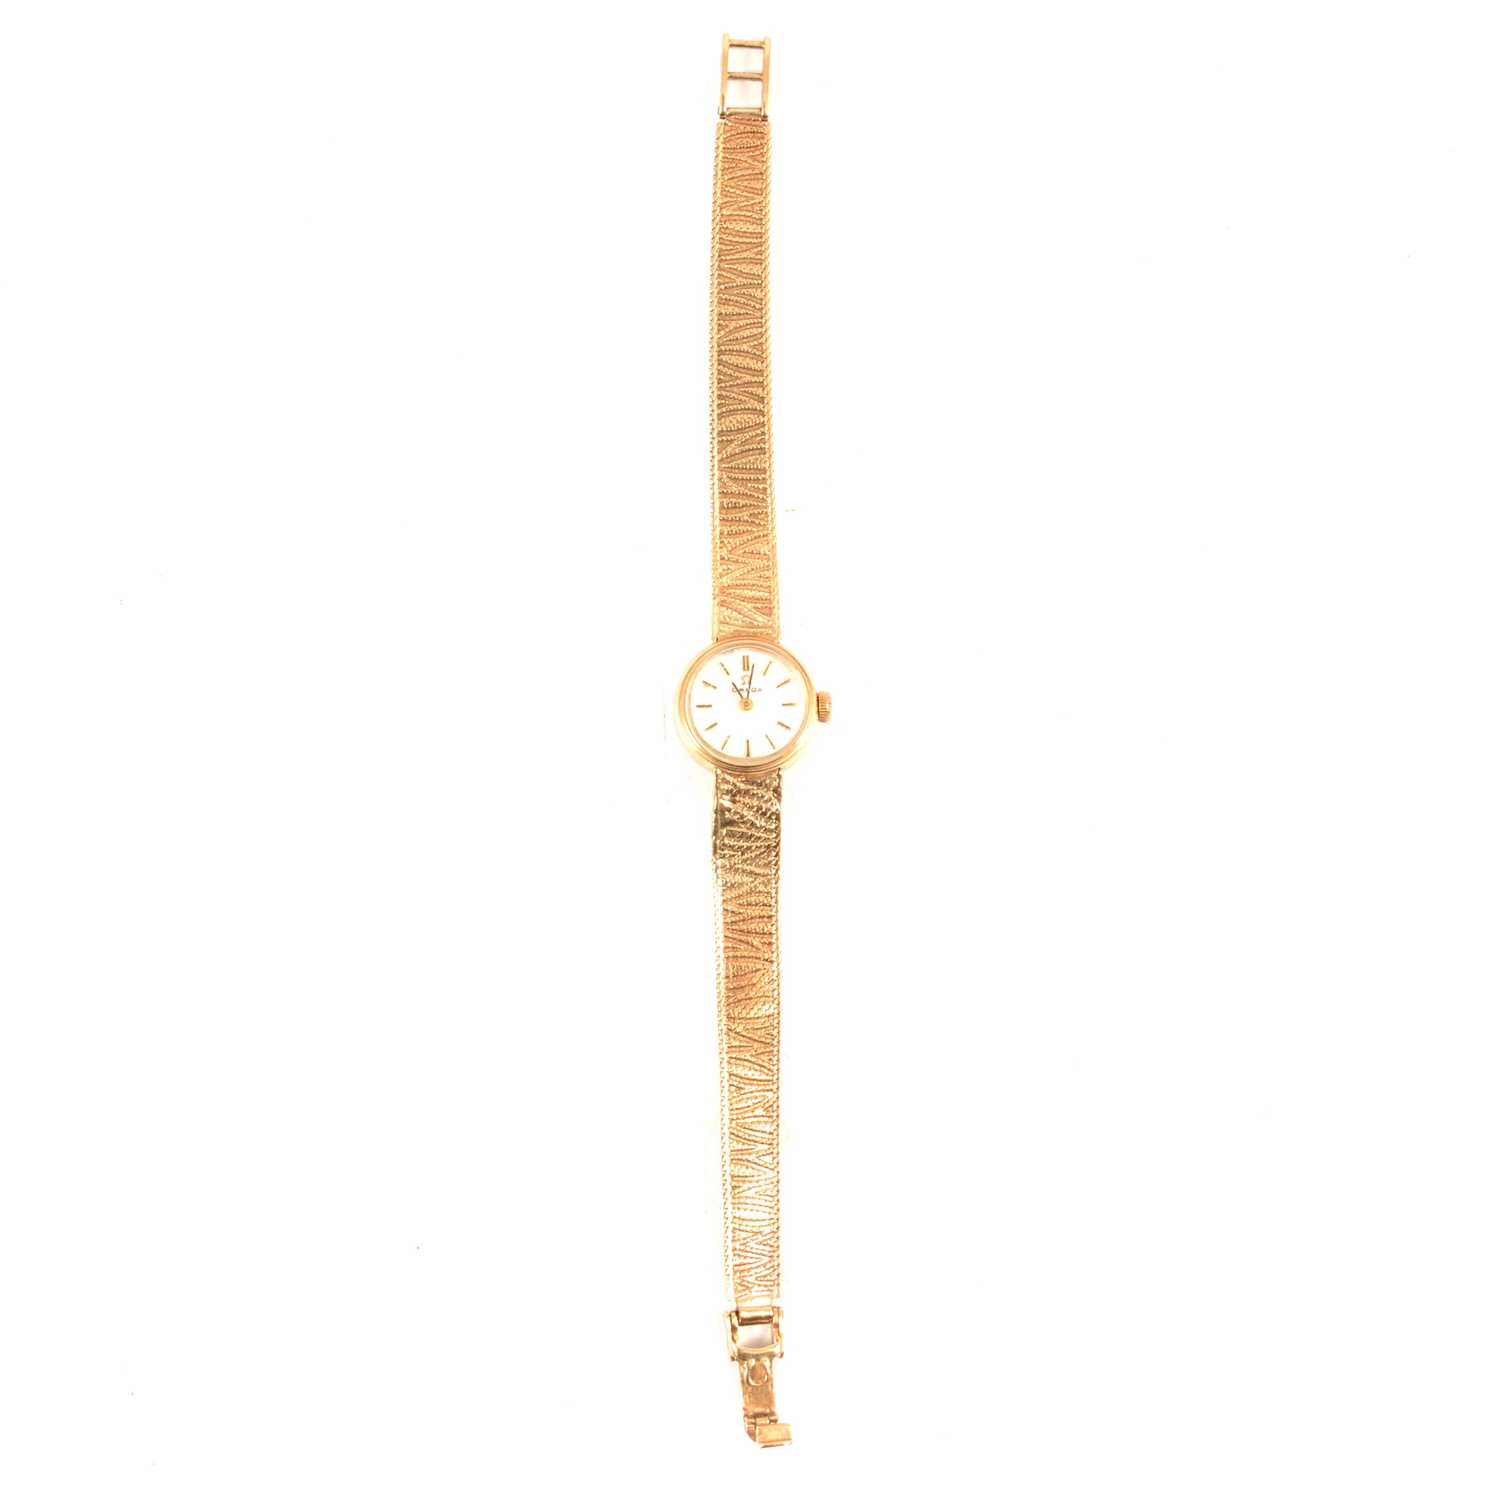 Omega - a lady's 9 carat gold bracelet watch.